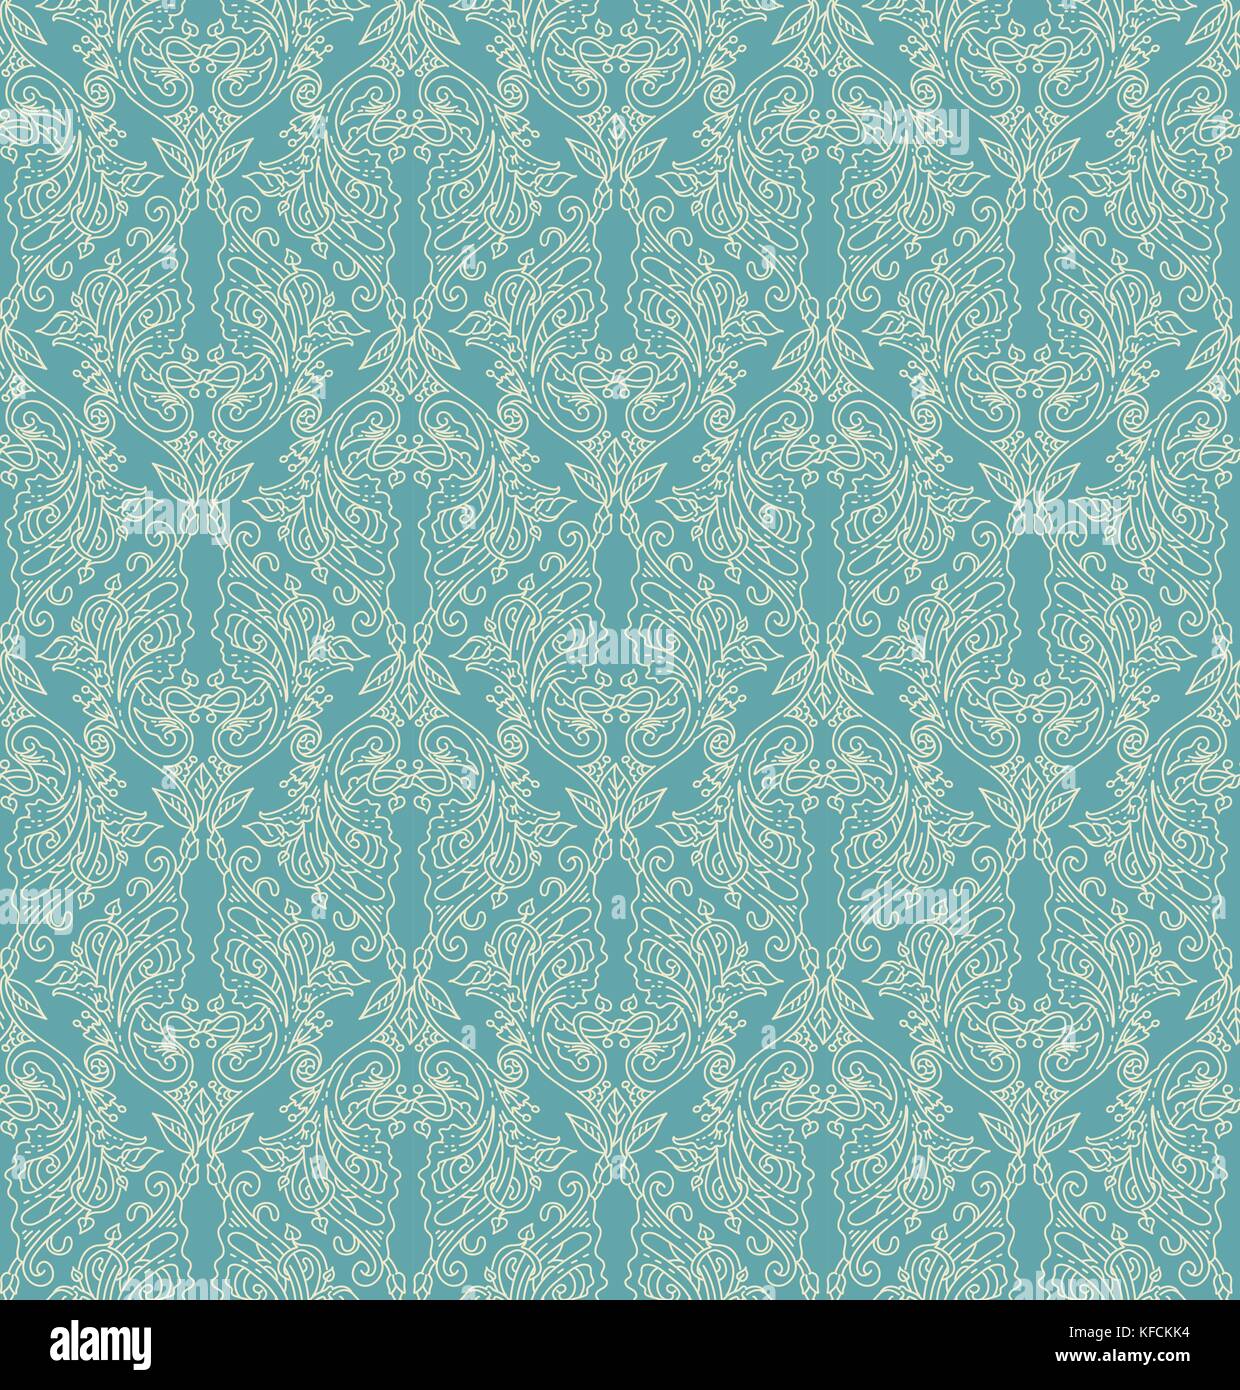 Florale nahtlose Muster - vector Abbildung: Detaillierte Ornament von floralen Zweige und Äste, in blauen Farben Stock Vektor